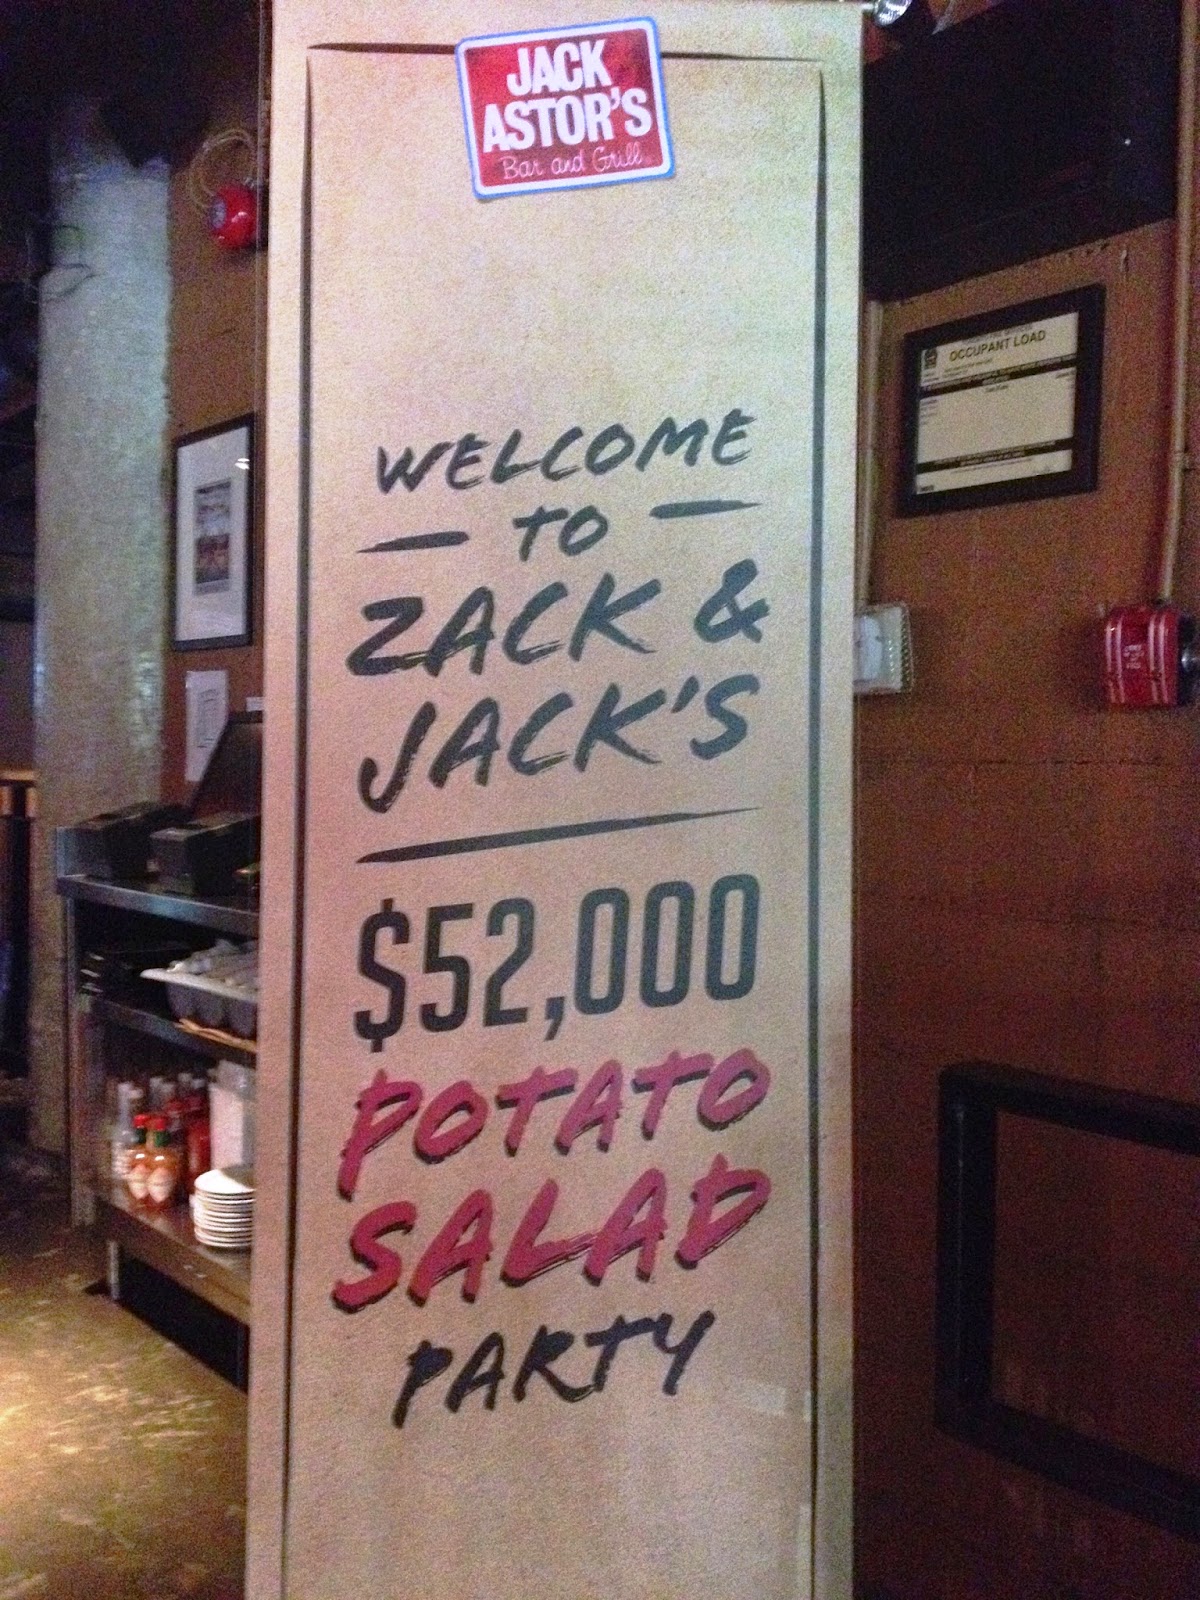 Zack & Jack's $52,000 Potato Salad Party